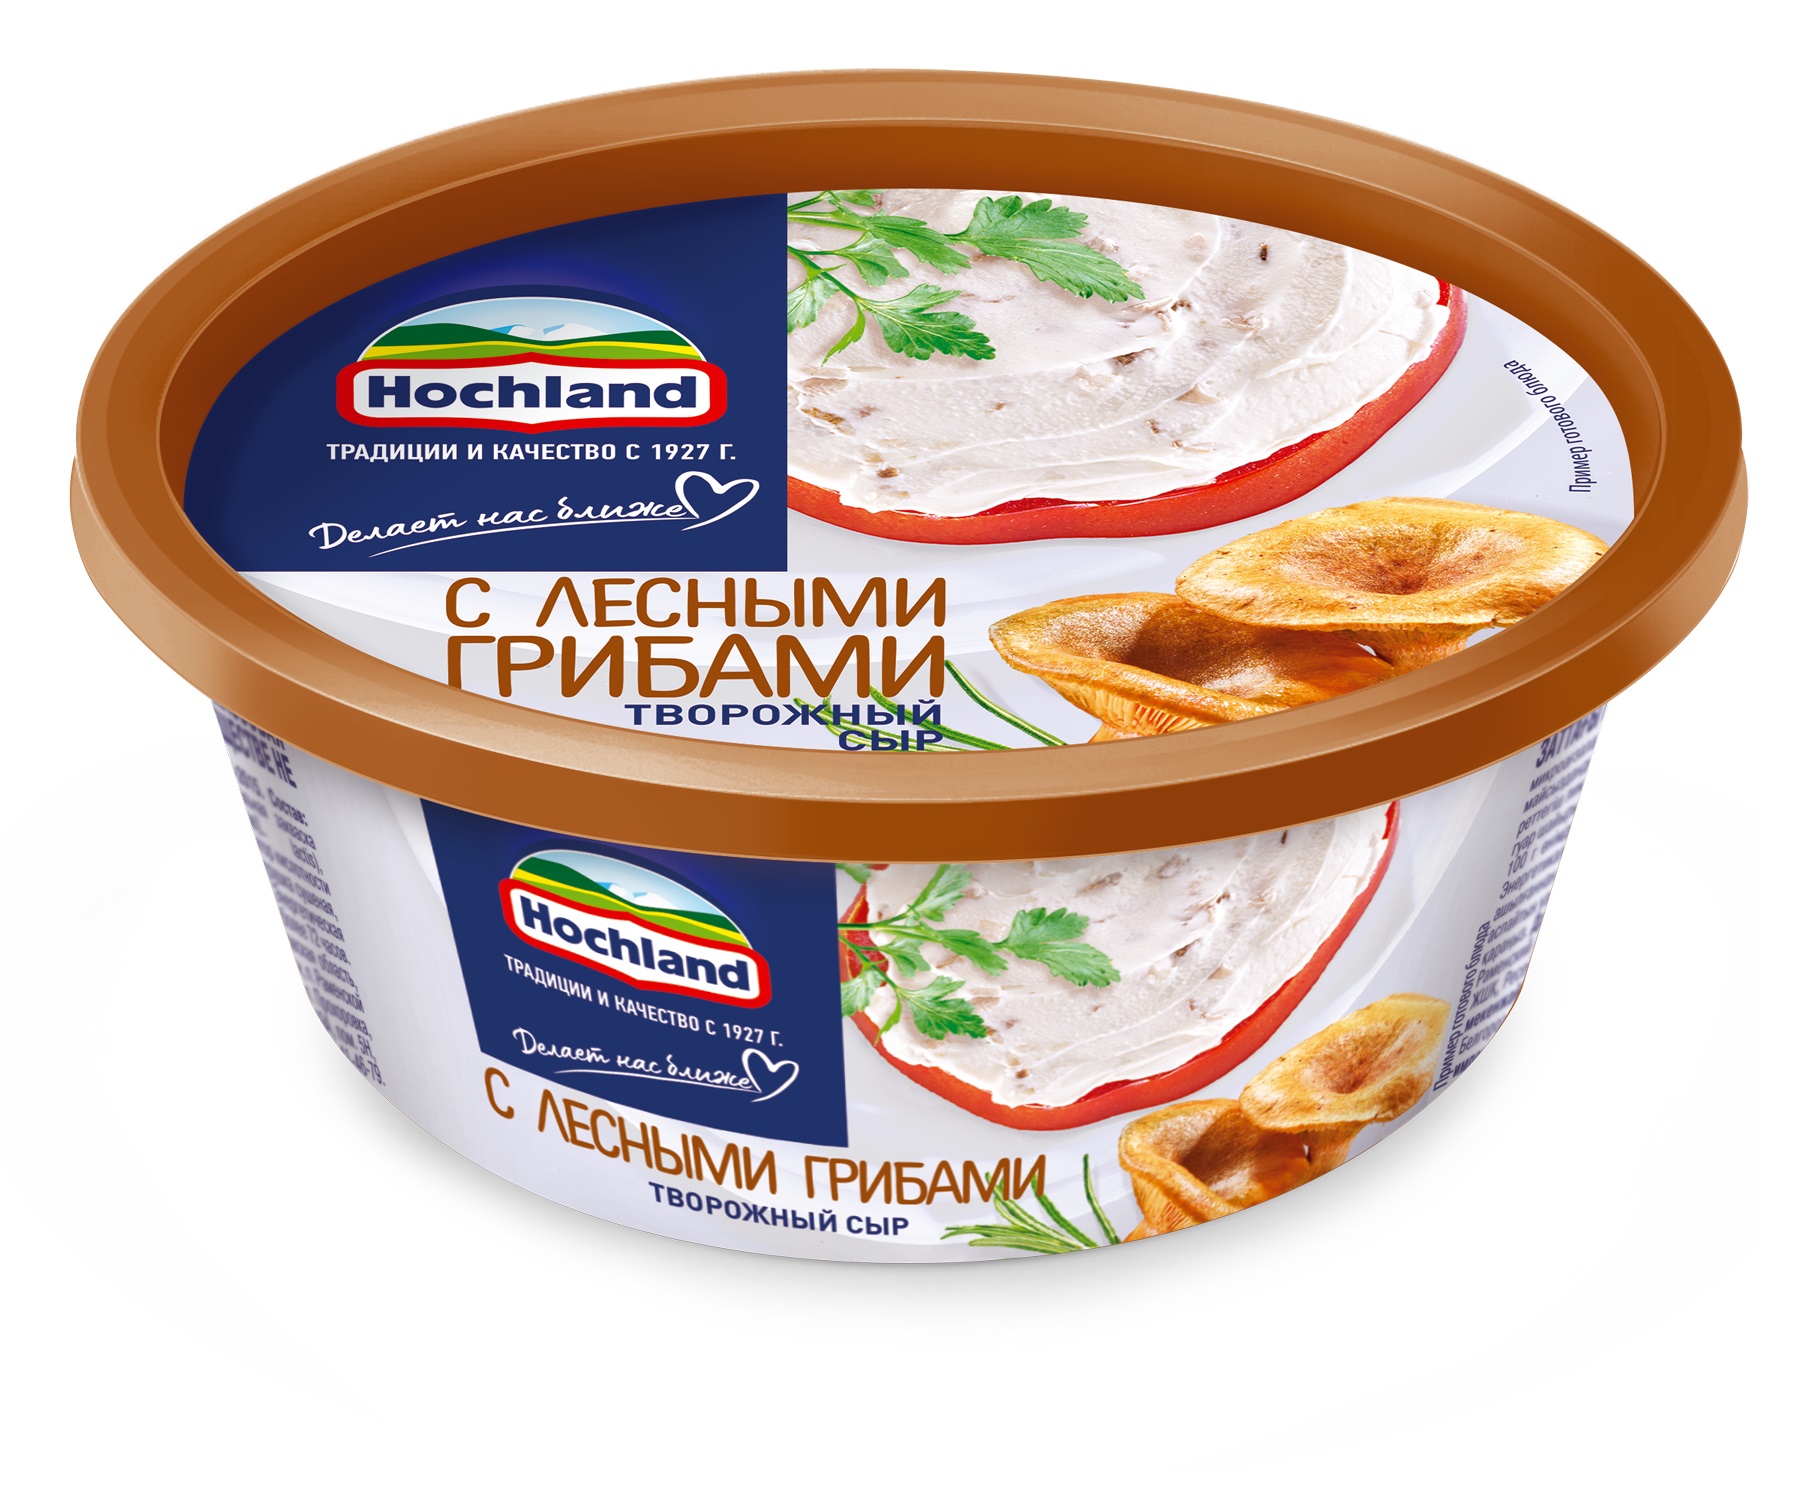 Сыр творожный Хохланд  Белгород  140г - интернет-магазин Близнецы